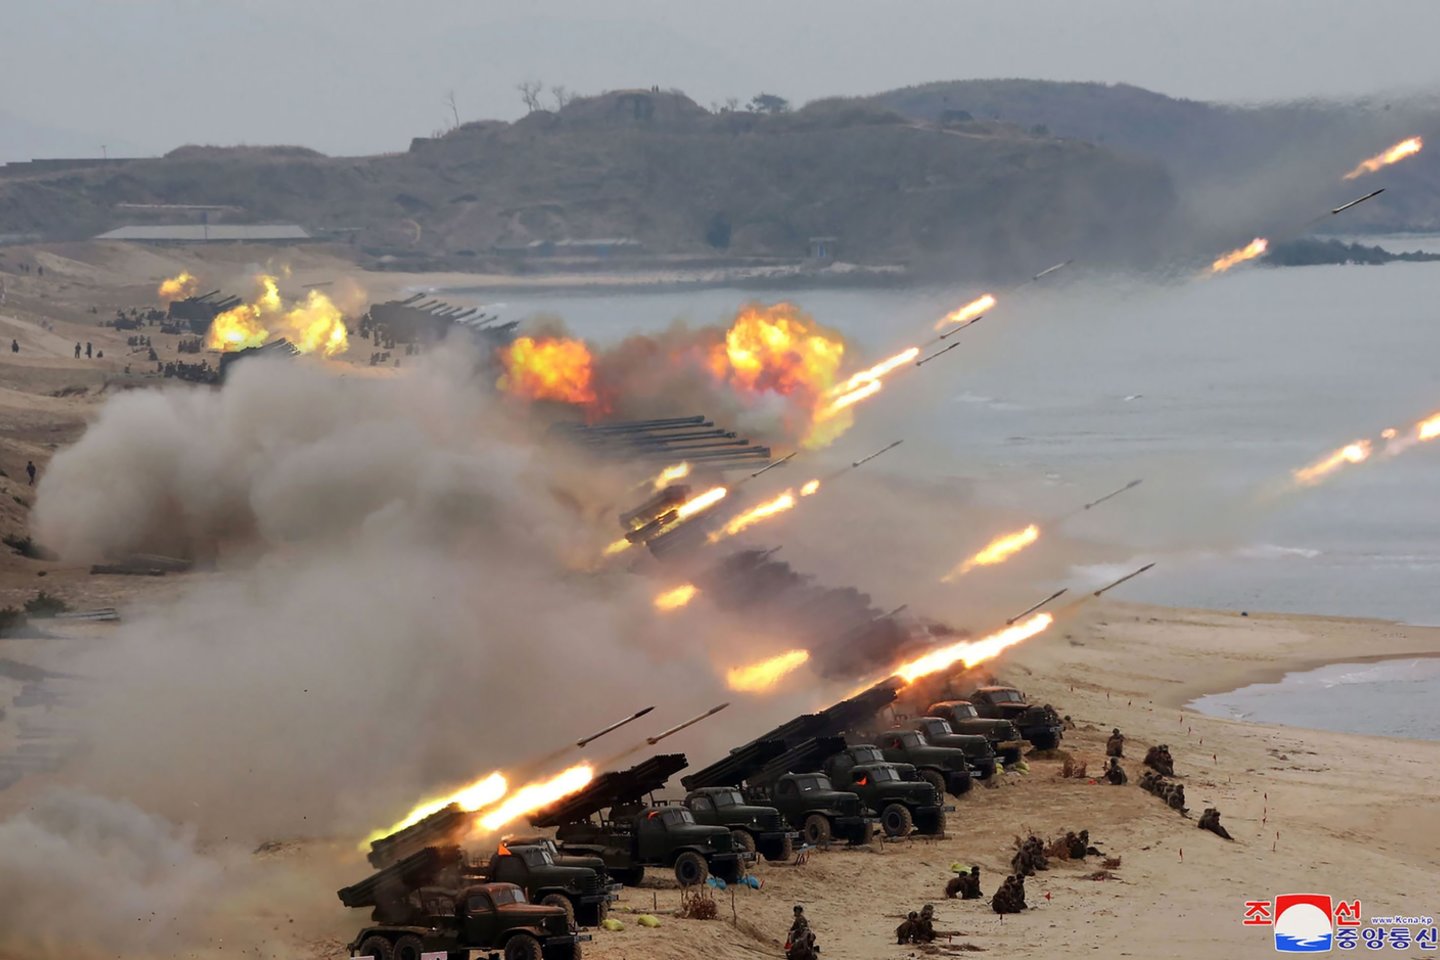  Įstrigus branduolinėms deryboms, Šiaurės Korėja paleido du neidentifikuotus sviedinius.<br> AFP/Scanpix nuotr.